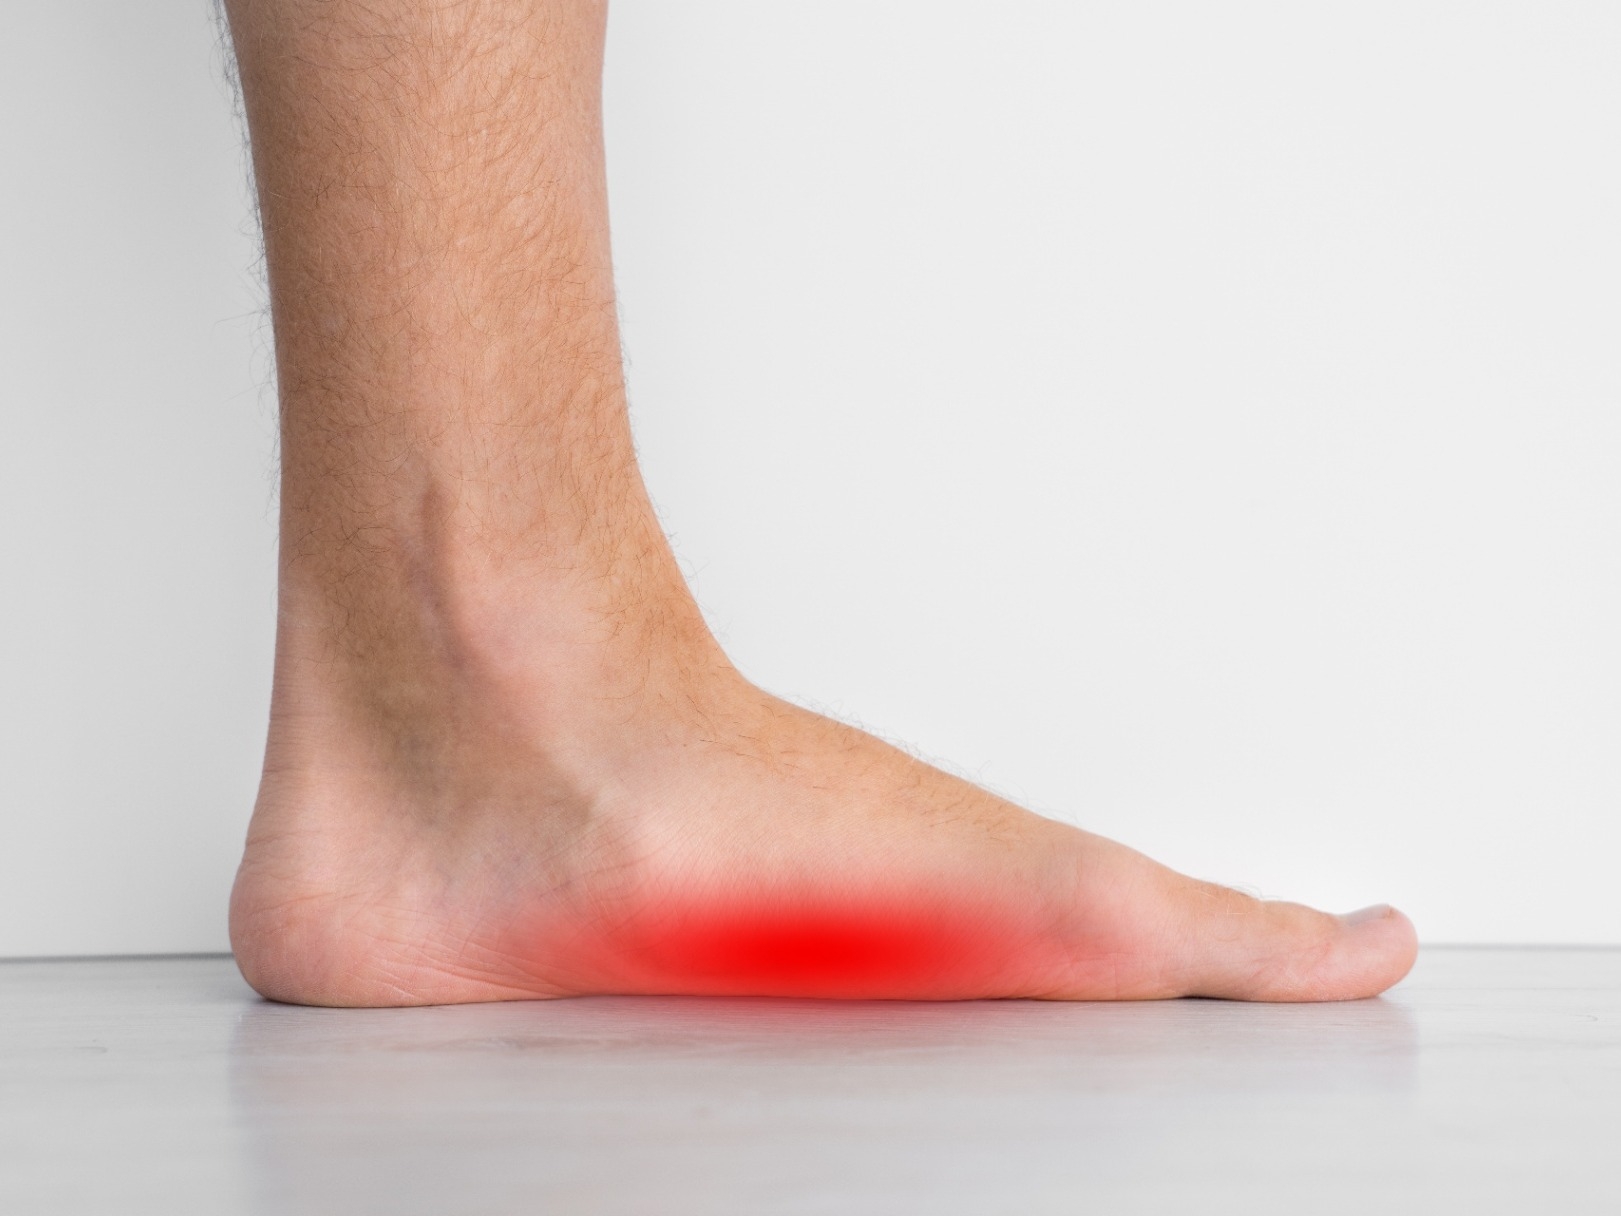 Symptoms of flat feet